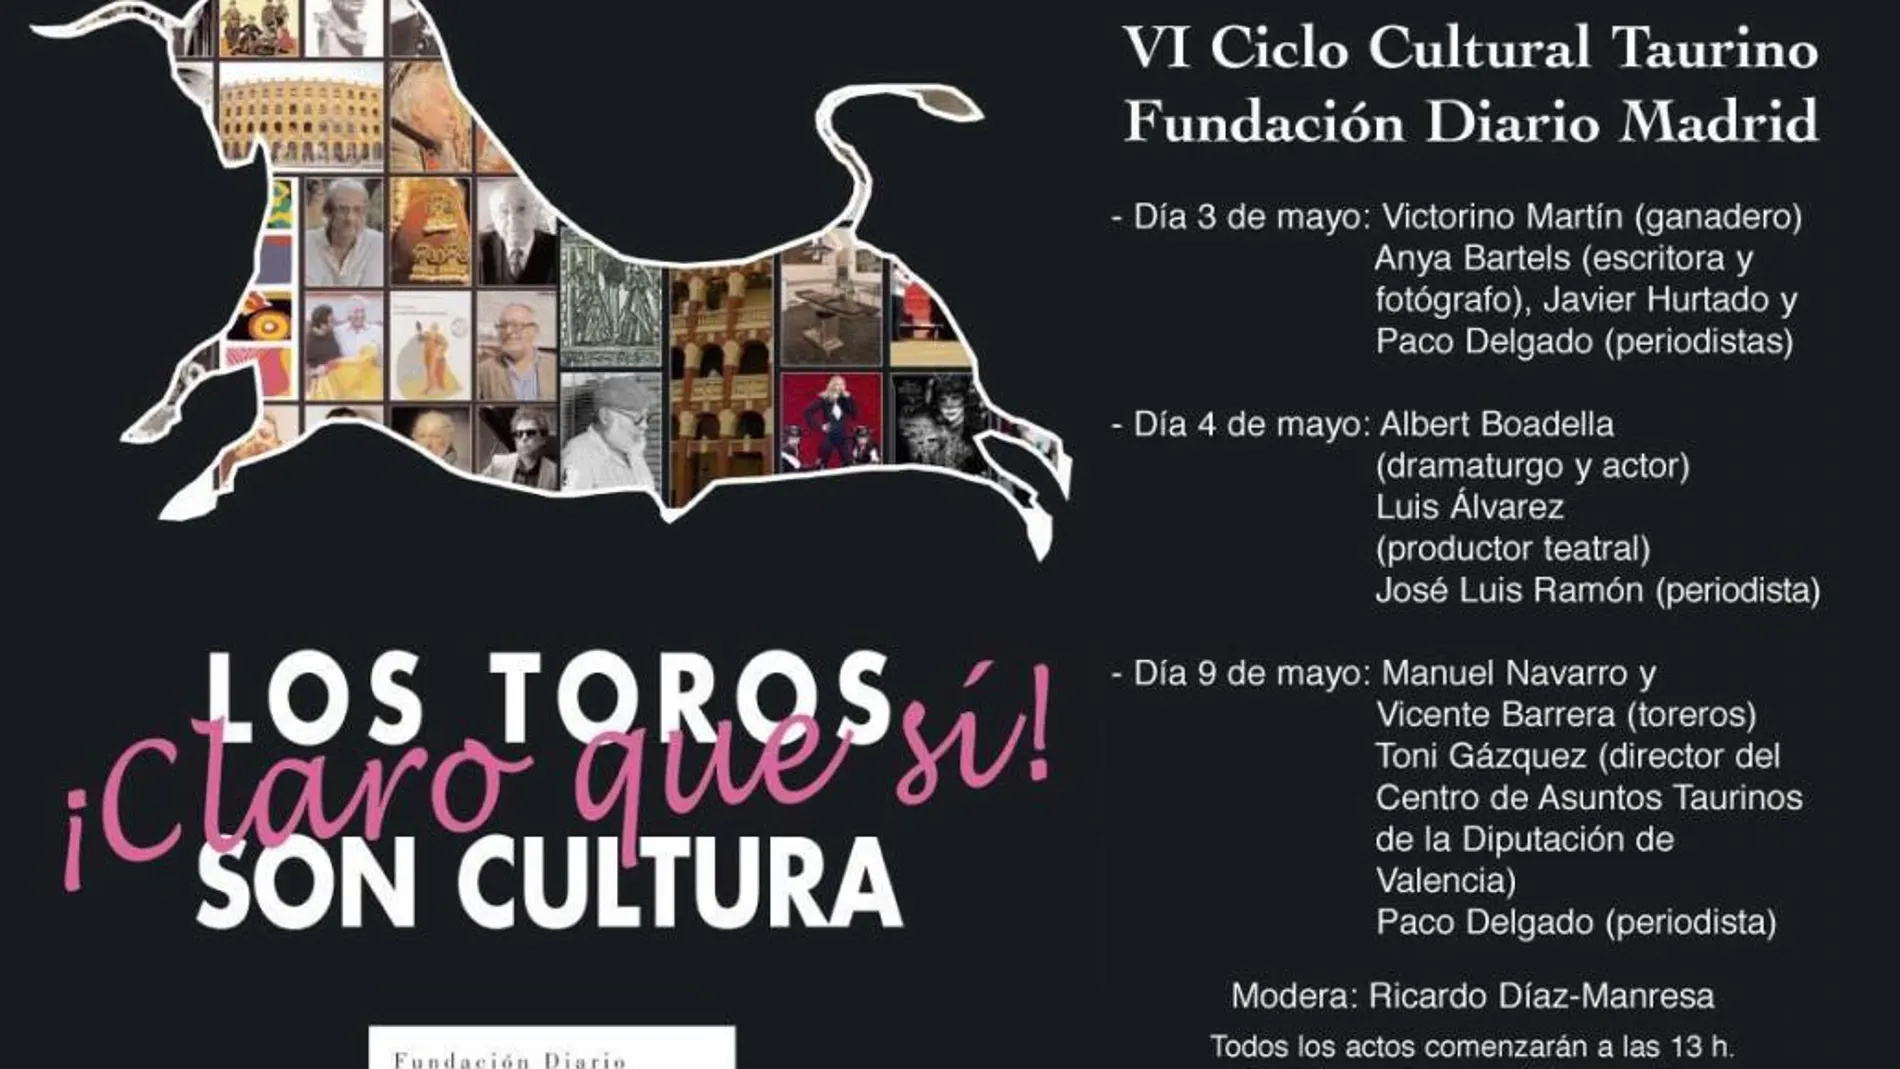 Cartel anunciador de las jornadas culturales taurinas